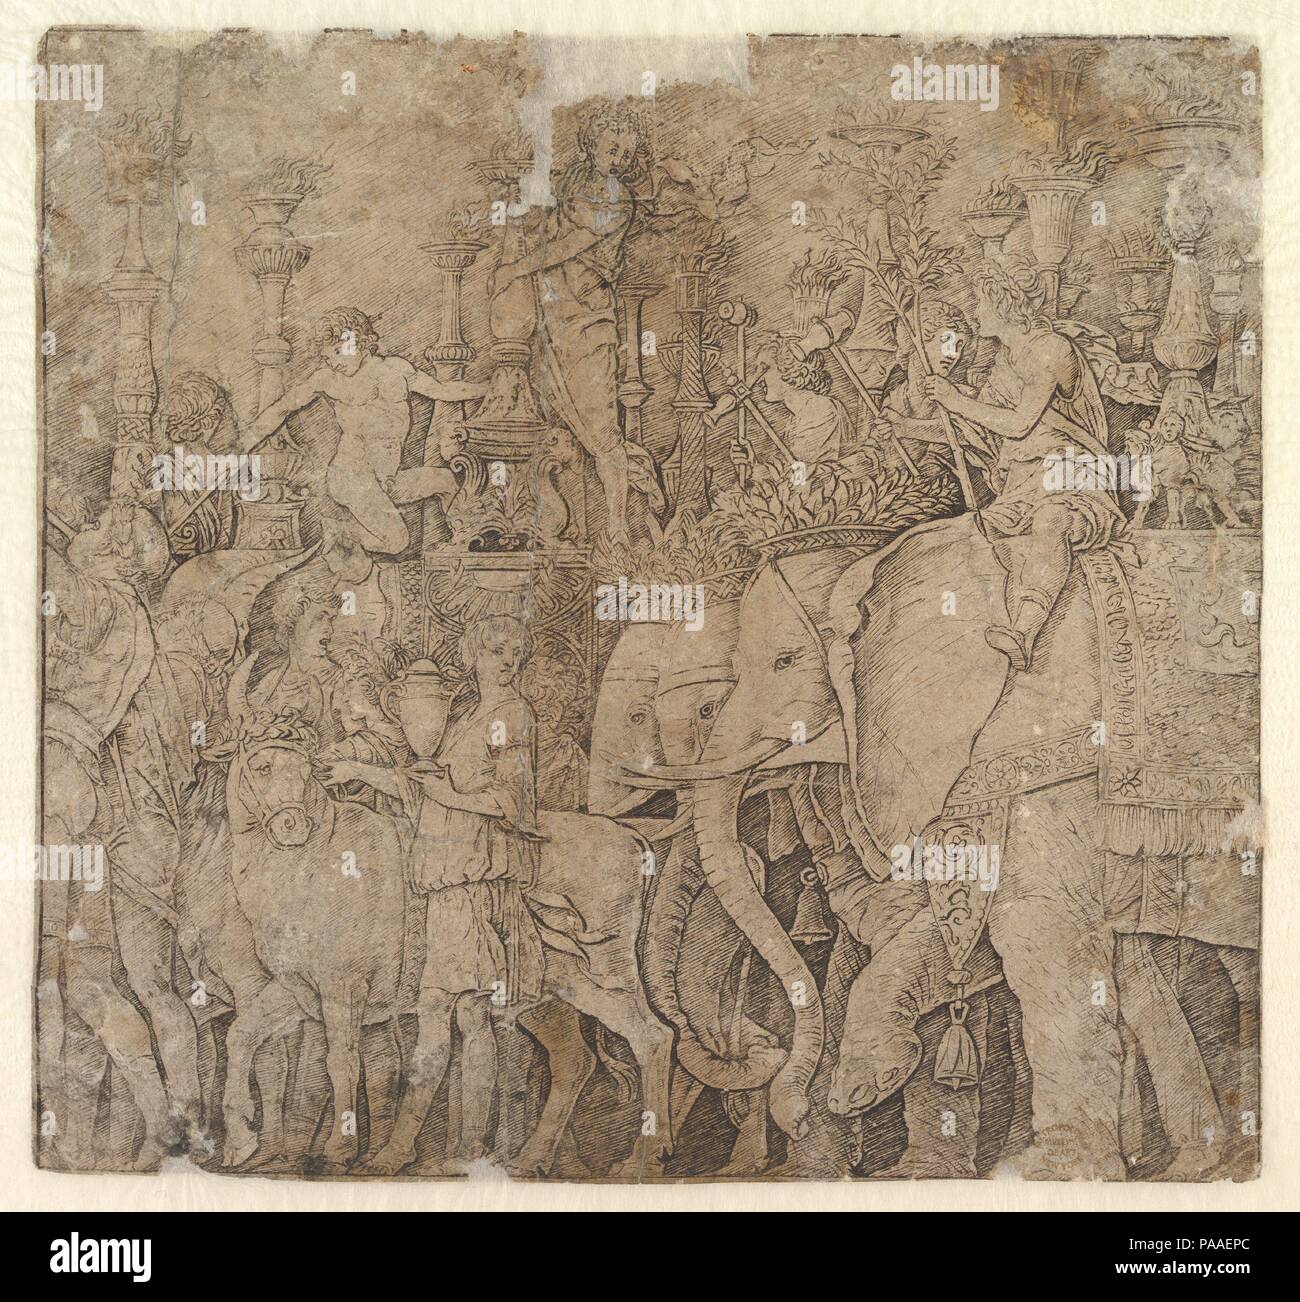 Triomphe de Jules César. Artiste : Andrea Mantegna (après l'italien, l'Isola di Carturo 1430/31-1506 Mantoue). Dimensions : hors tout : 9 9/16 x 10 1/4in. (24.3 x 26.1cm). Date : 1431-1506. Musée : Metropolitan Museum of Art, New York, USA. Banque D'Images